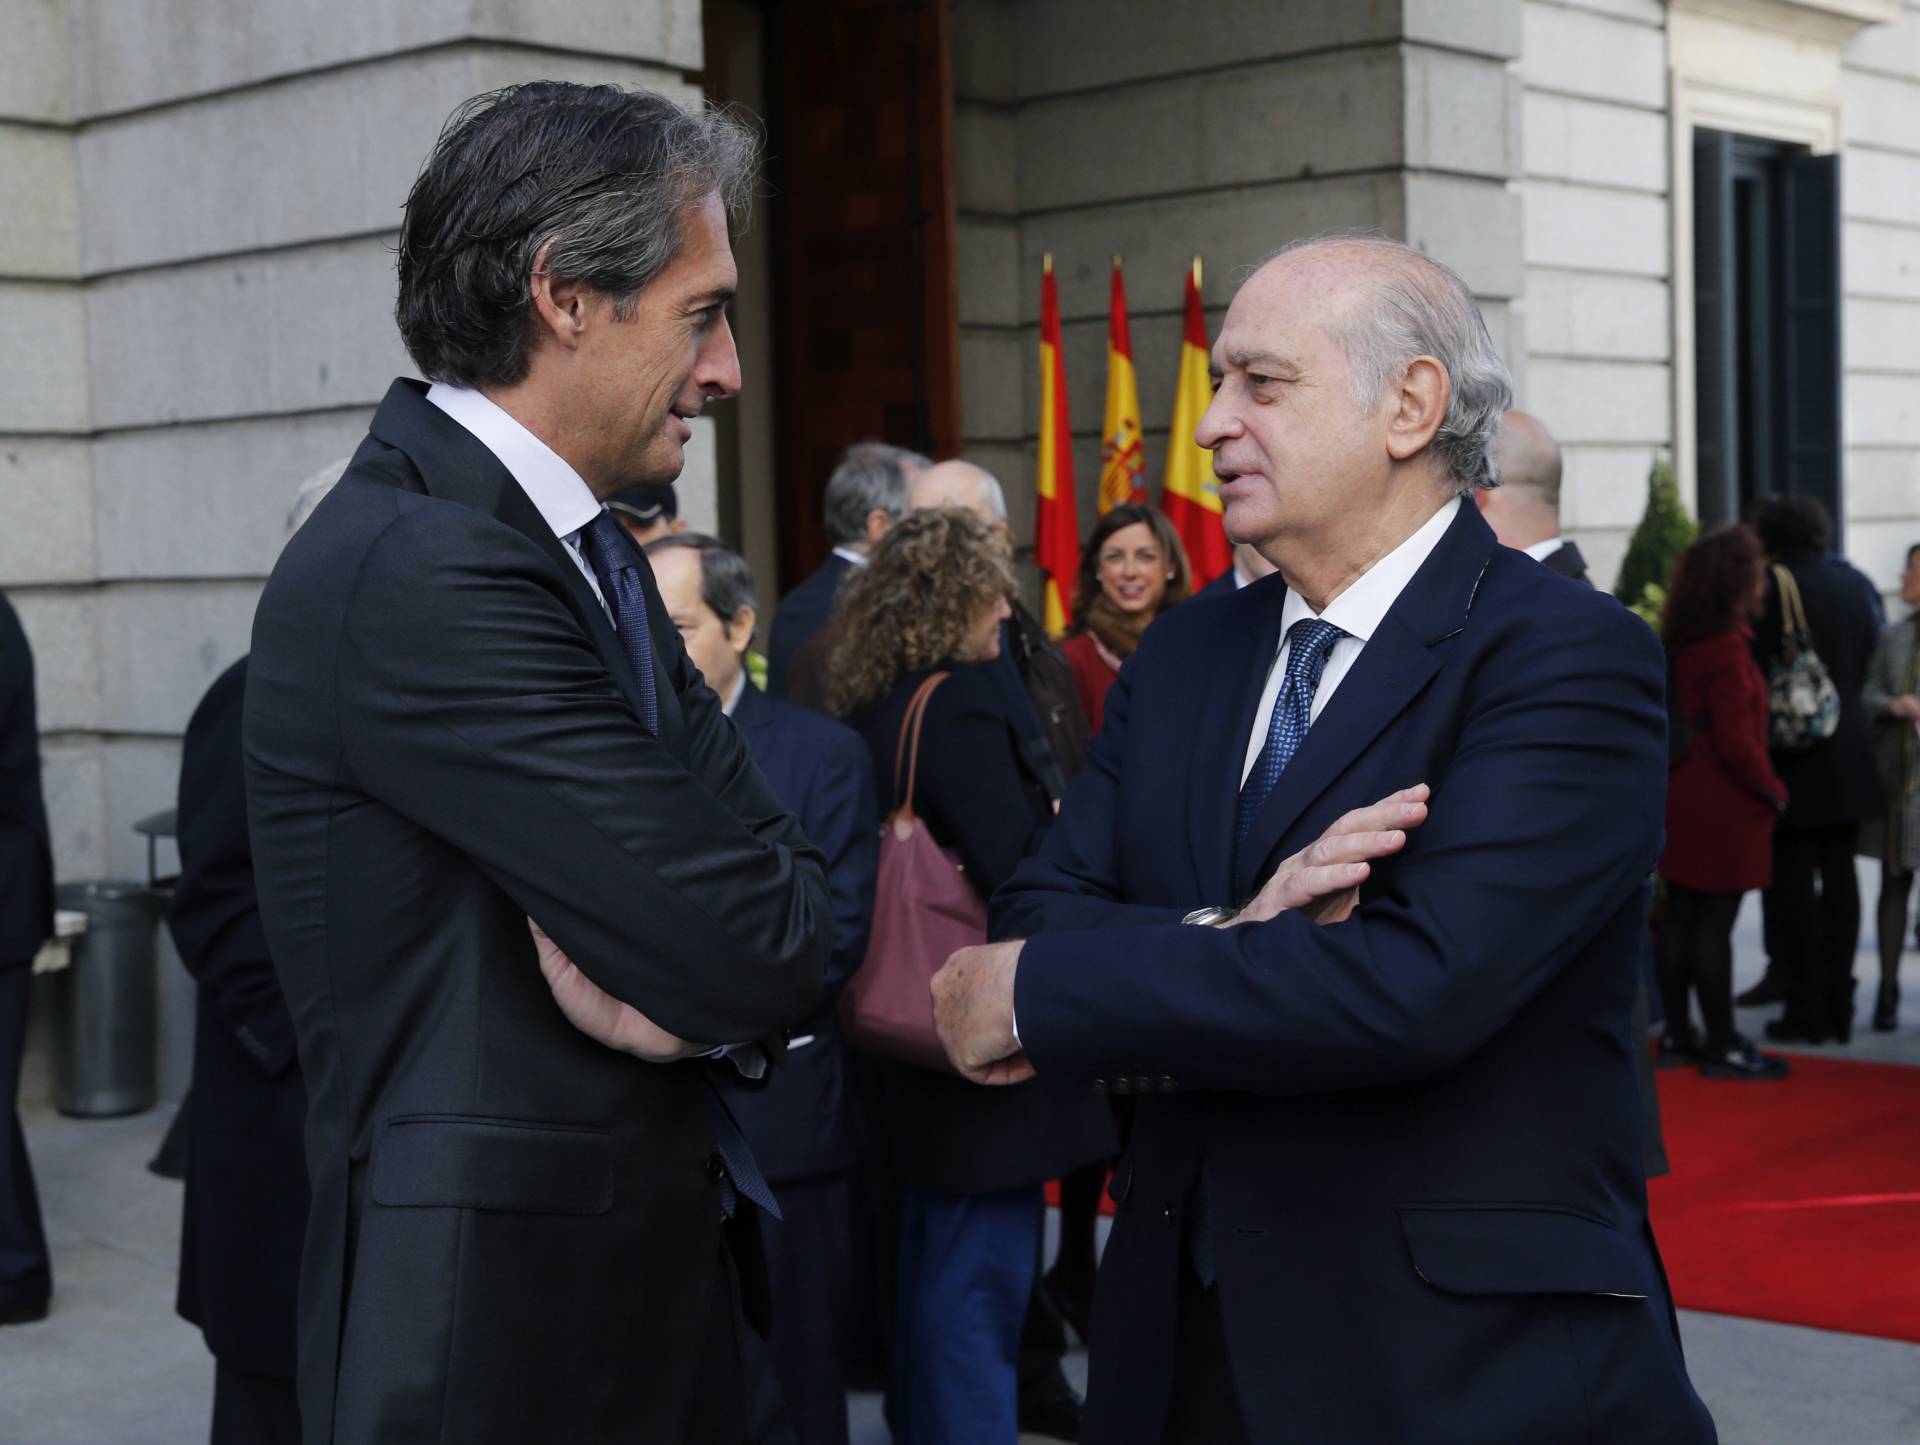 El ex ministro del Interior, Jorge Fernández Díaz, conversa con el ministro de Fomento, Íñigo de la Serna.